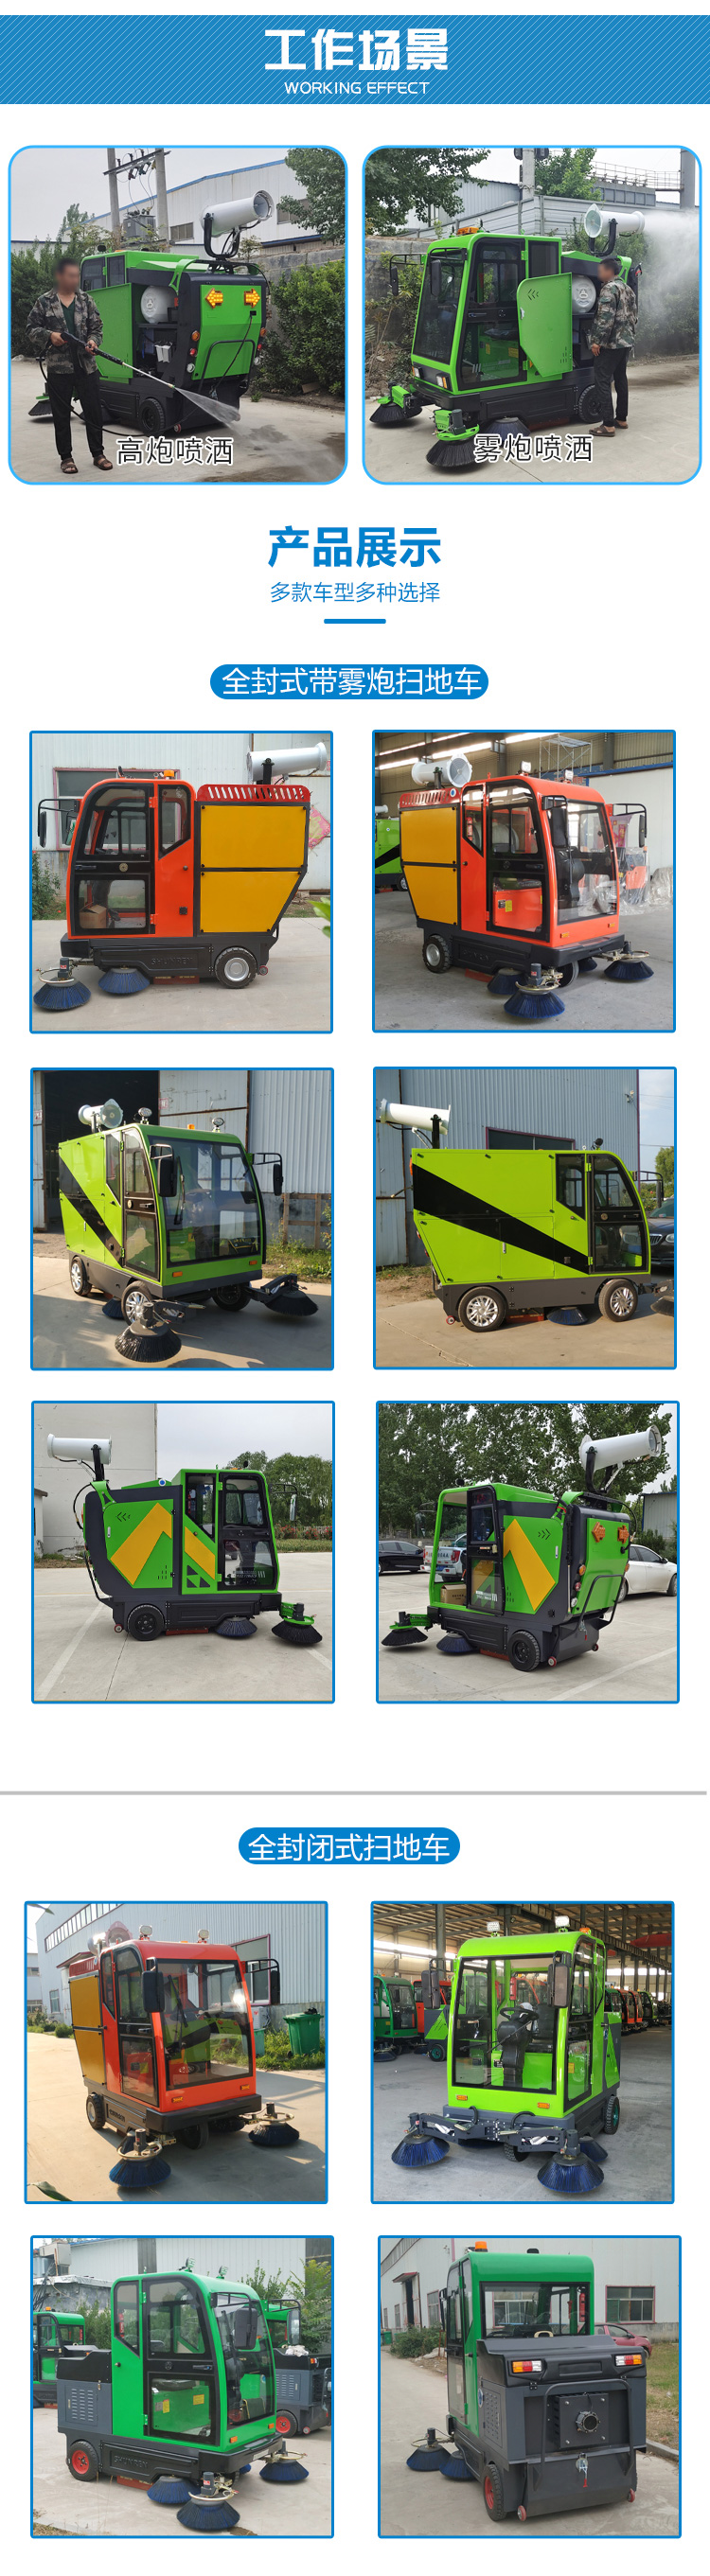 新款电动扫路车 电动道路清扫车 小型扫地车 生产销售